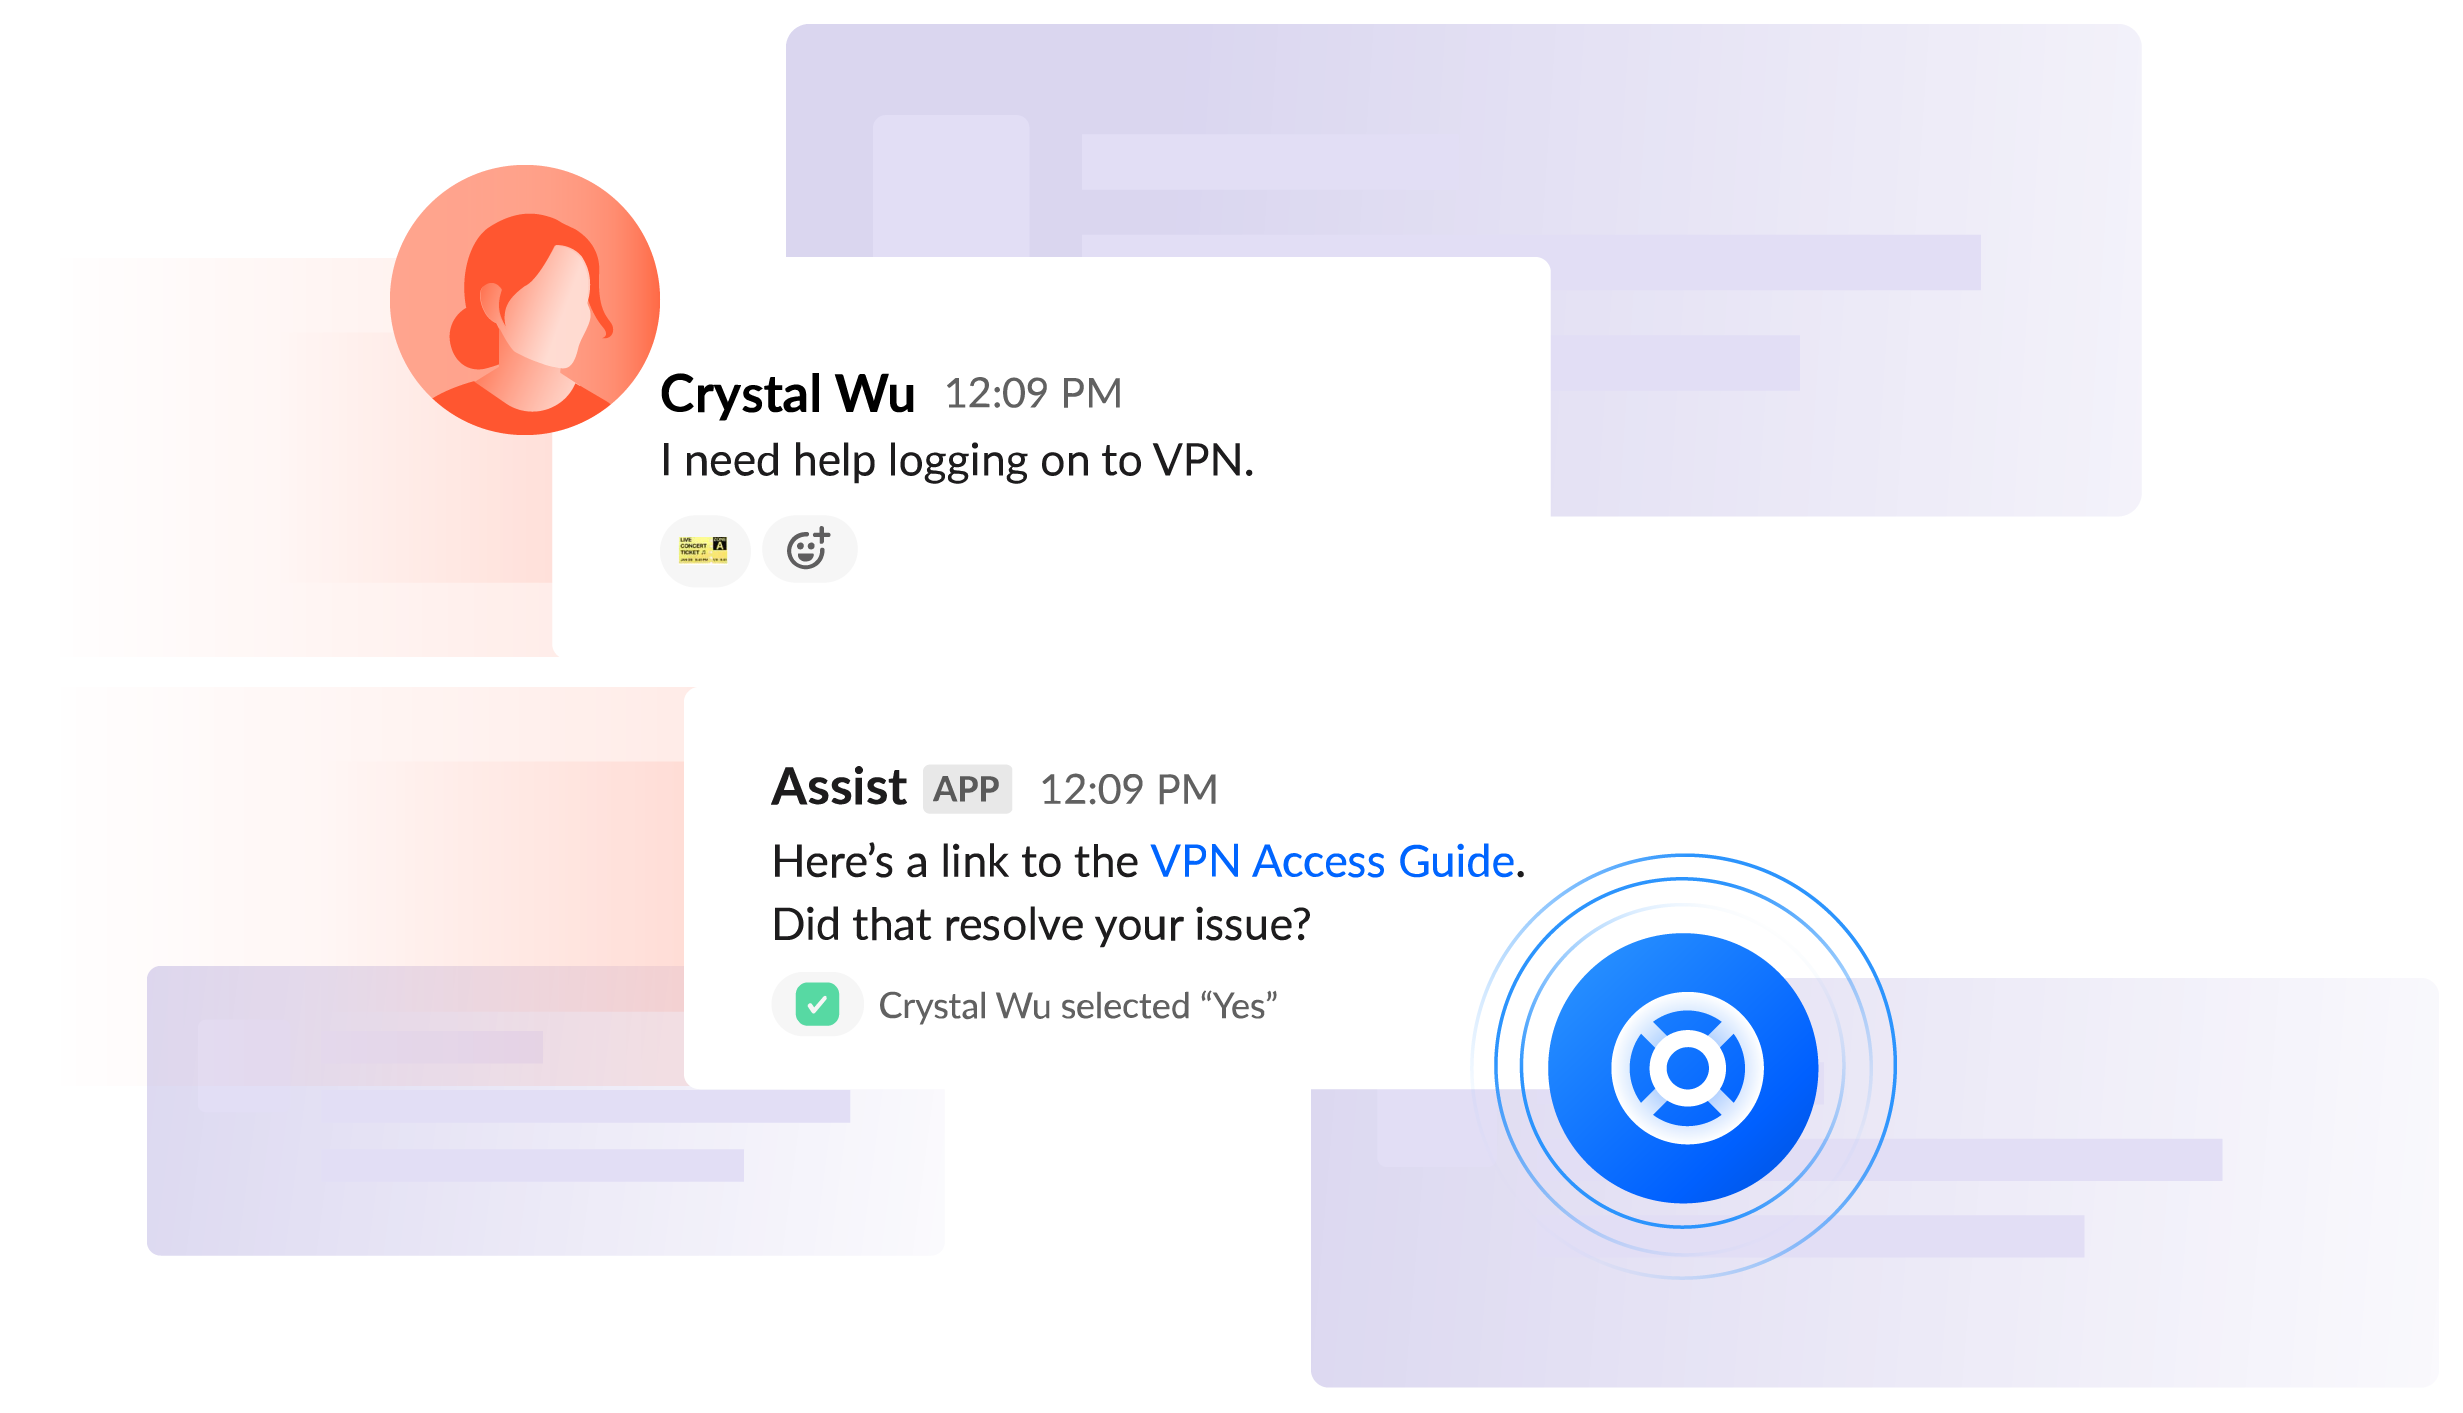 Slack-chat "Ik heb hulp nodig bij het inloggen op VPN".- Crystal; "Dit is een link naar de handleiding voor VPN-toegang. Is je probleem daarmee opgelost?" - Assist